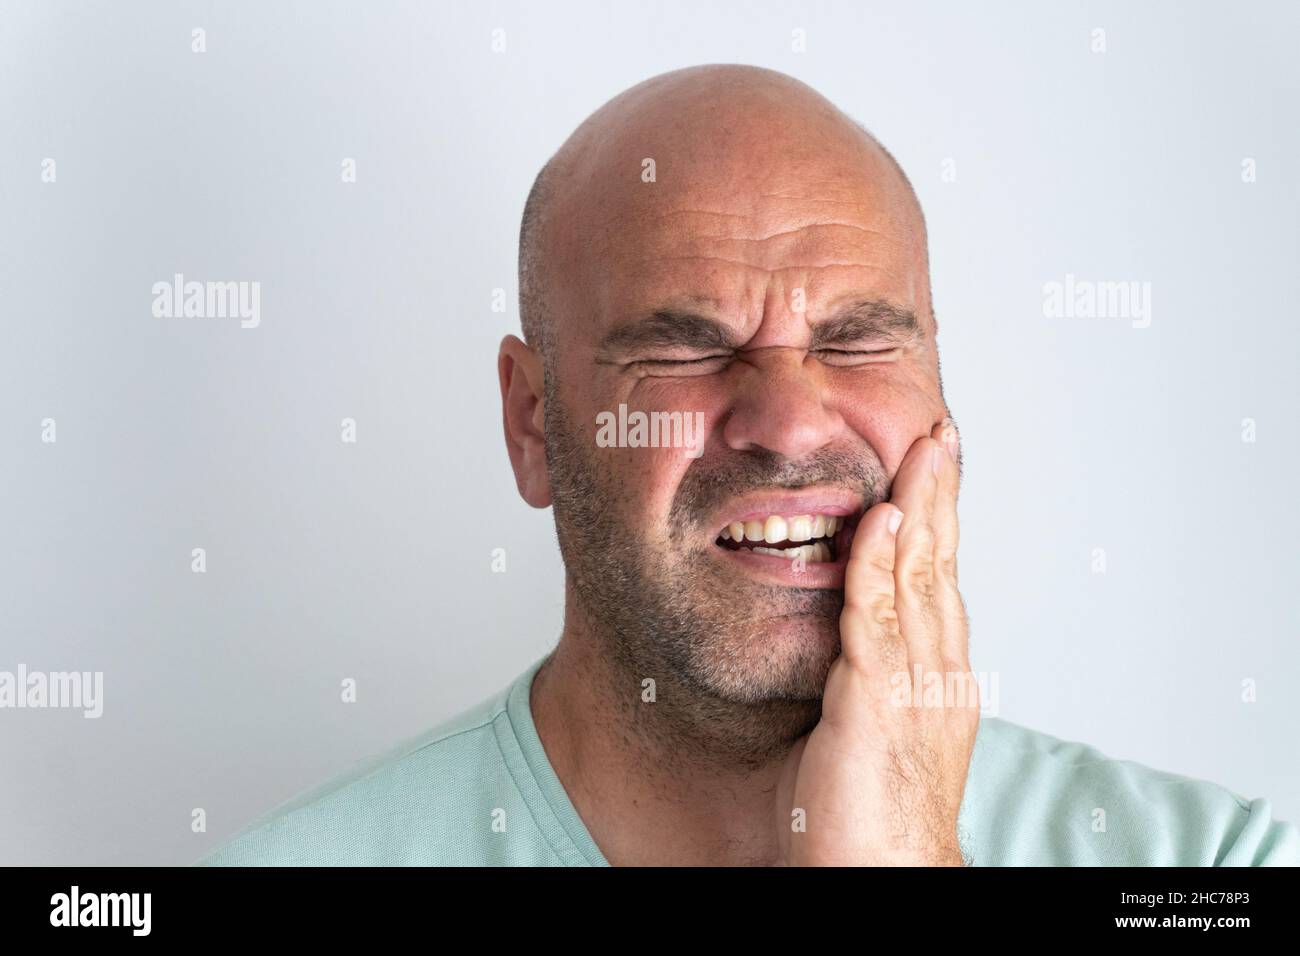 De chauve, barbu caucasien homme gesturant un mal de dents. Banque D'Images